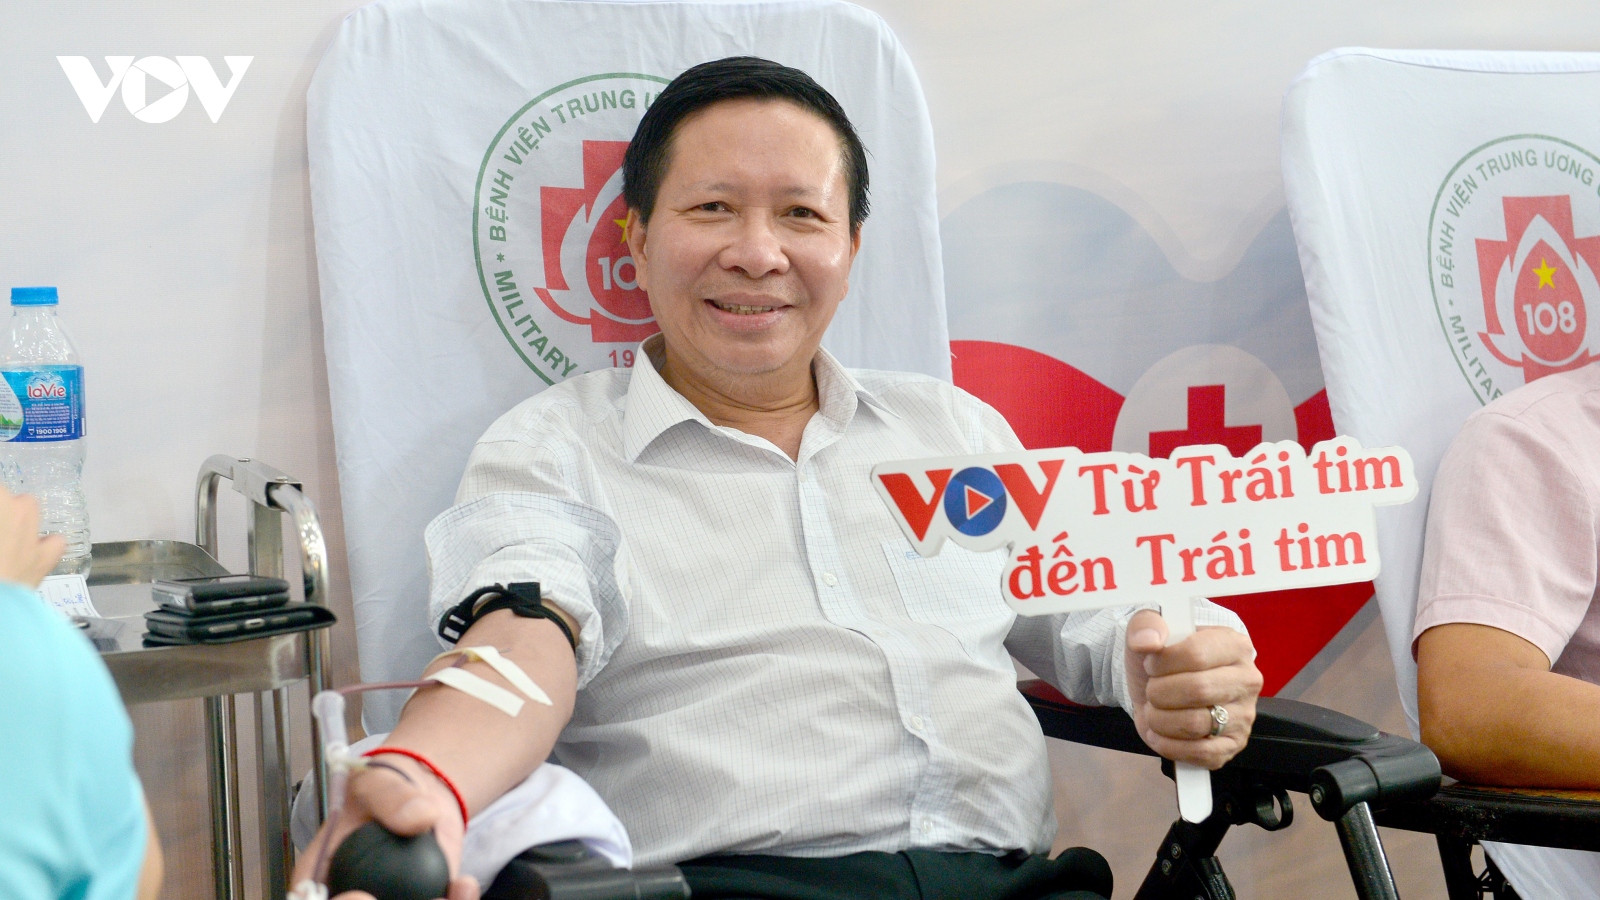 Cán bộ, nhân viên VOV tích cực hiến máu để “Triệu trái tim chung nhịp đập”